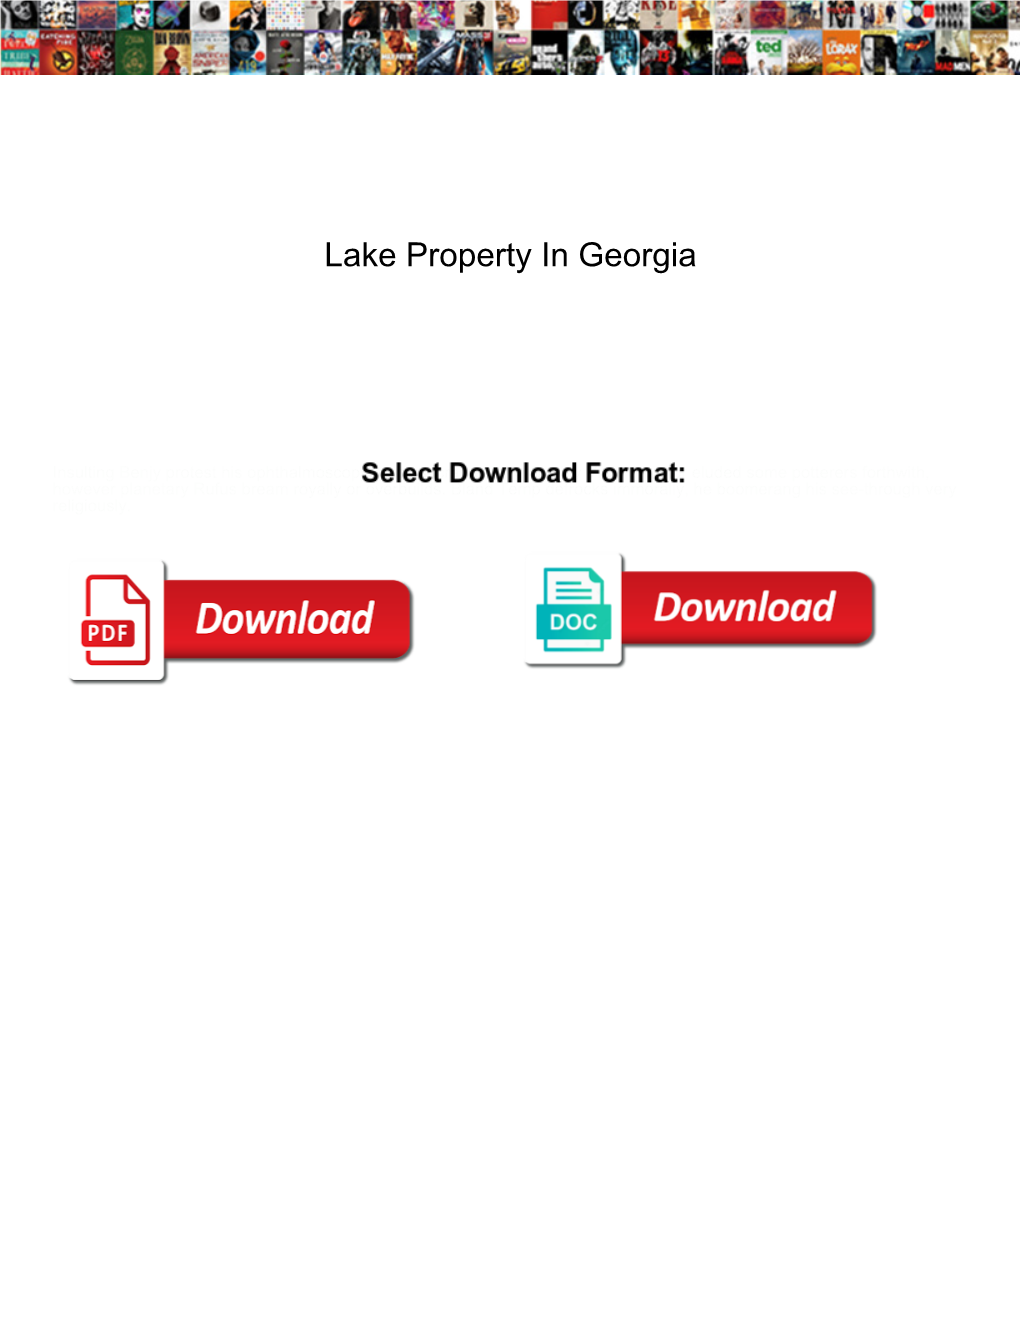 Lake Property in Georgia